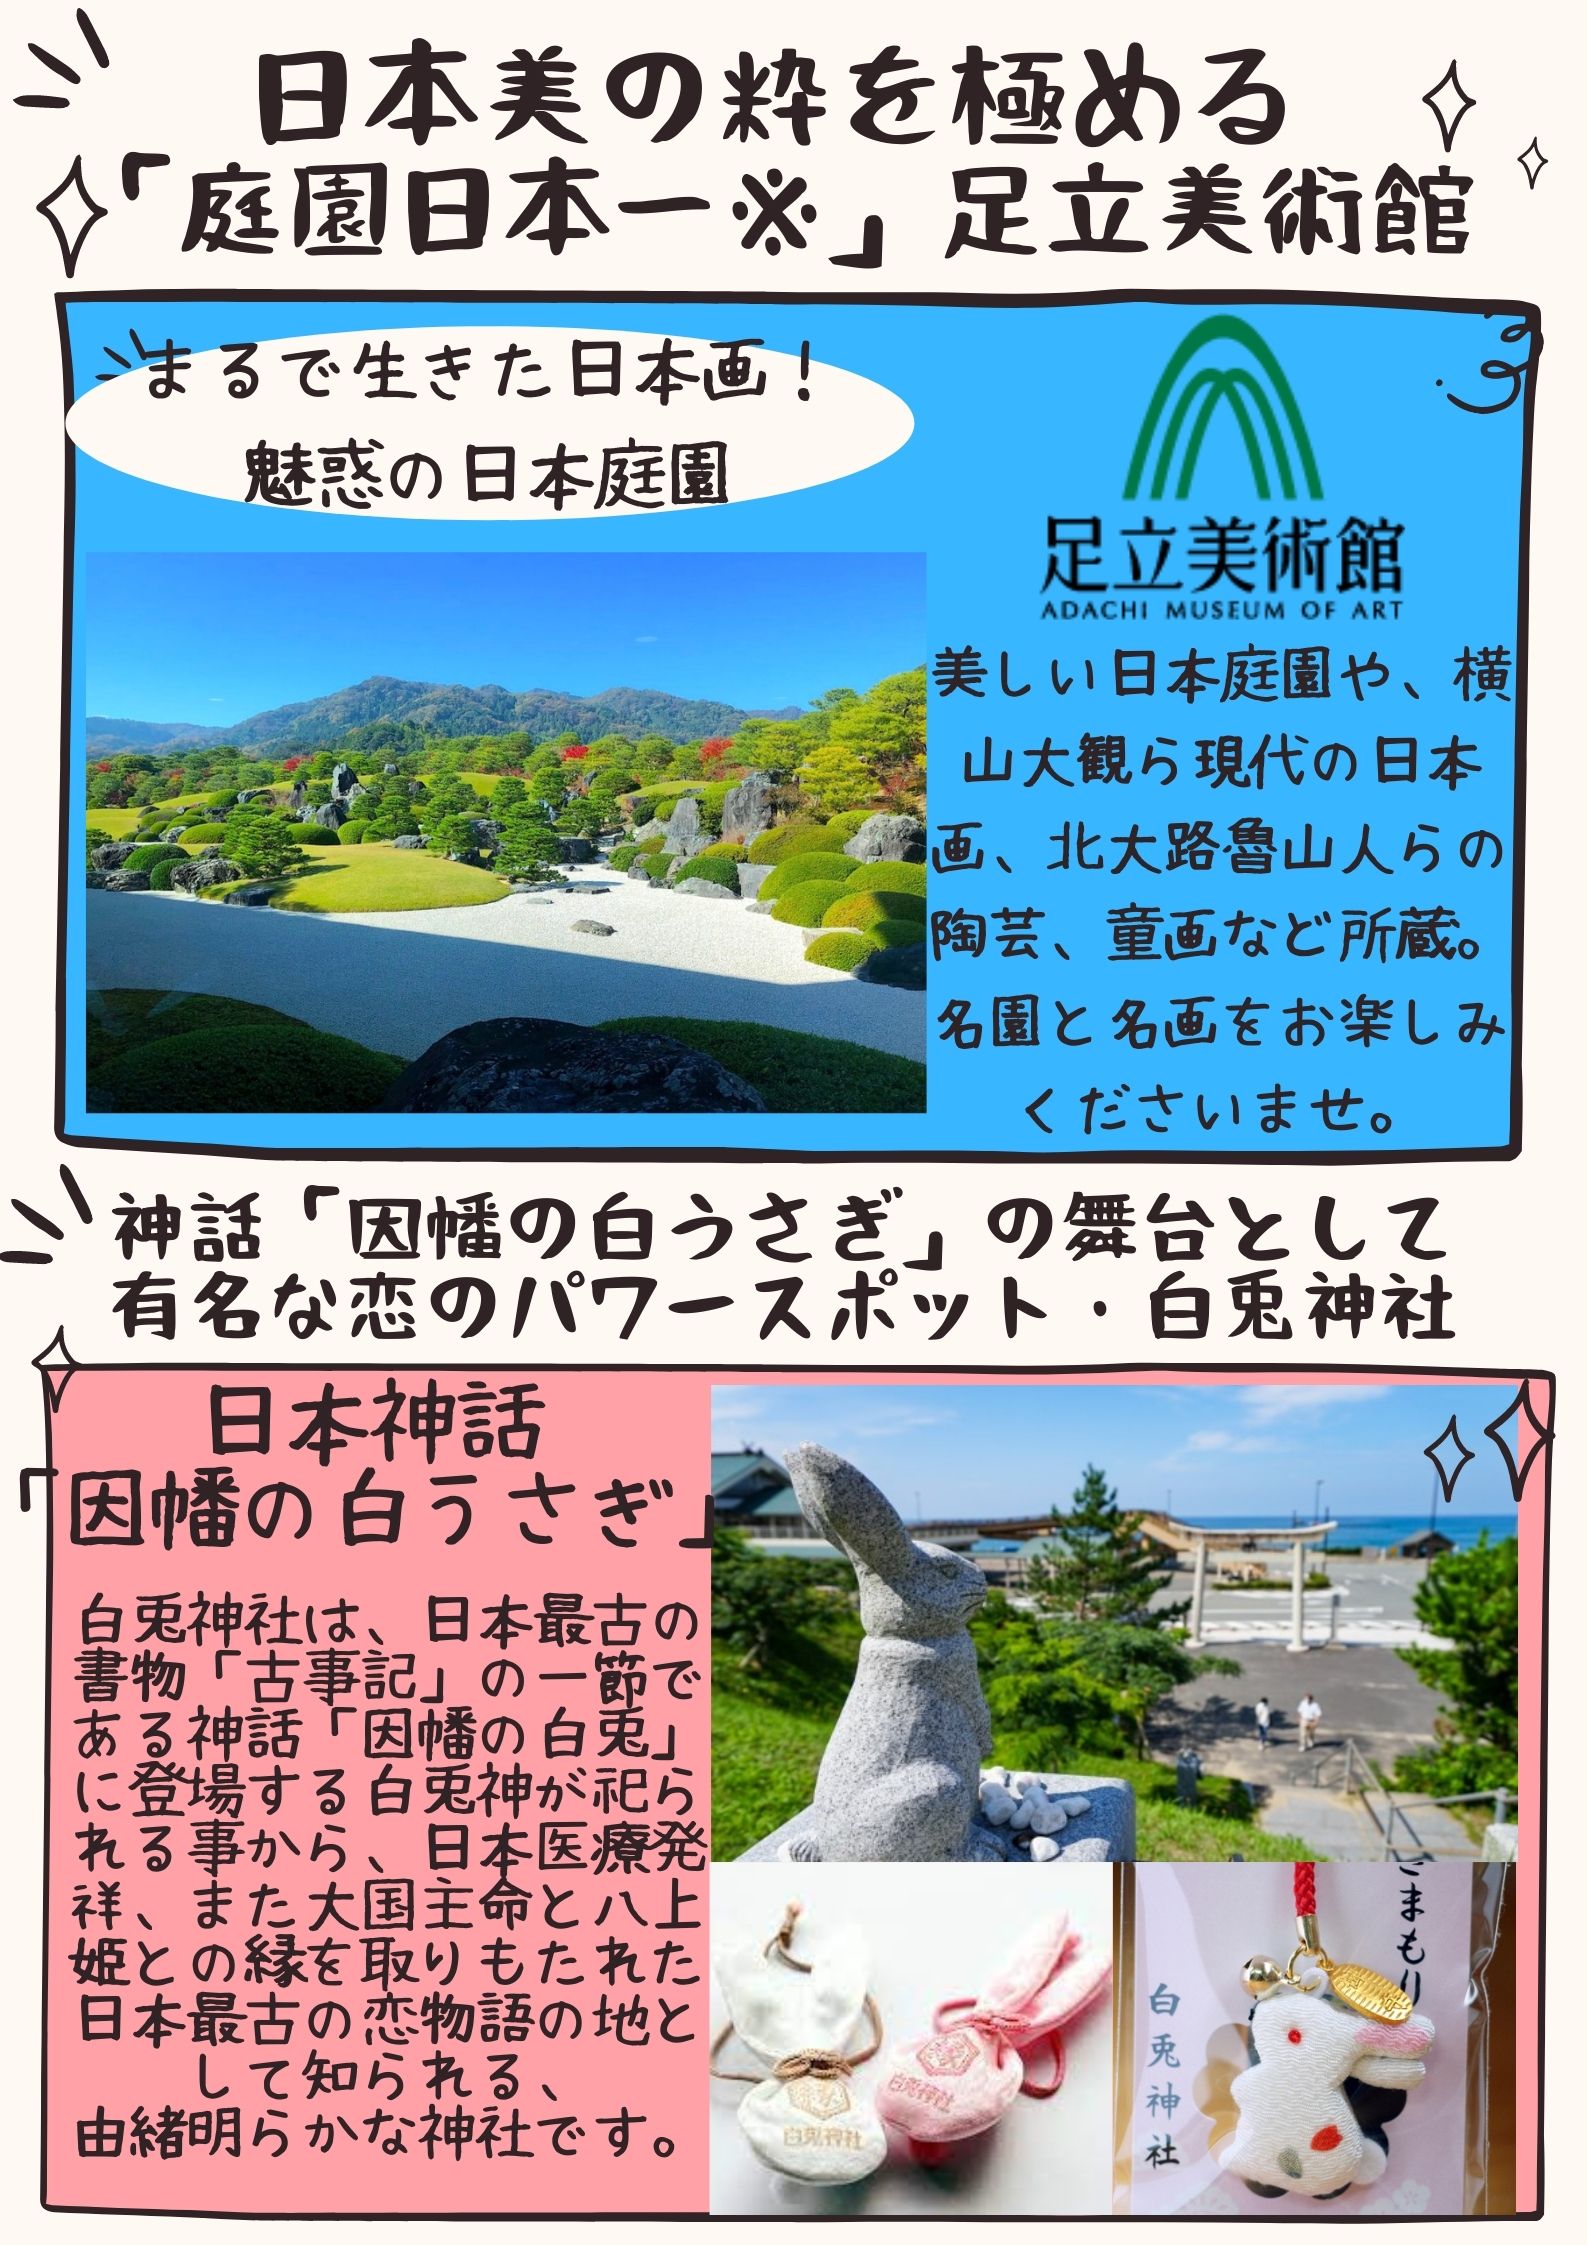 足立美術館・白兎神社(イメージ)